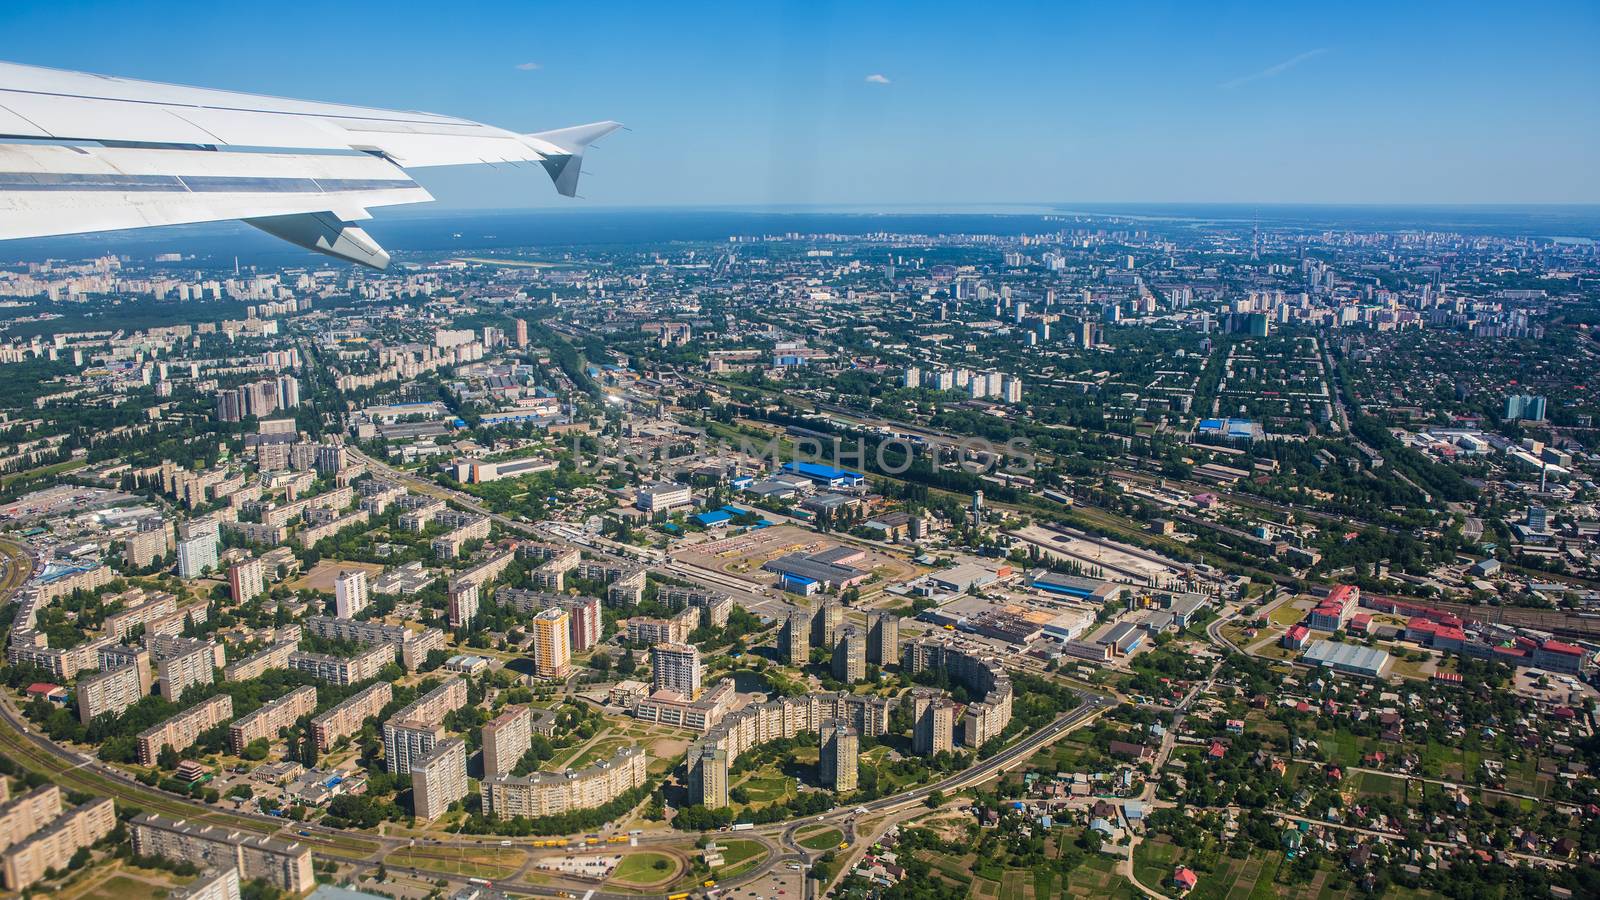 Aerial view of a city by sarymsakov